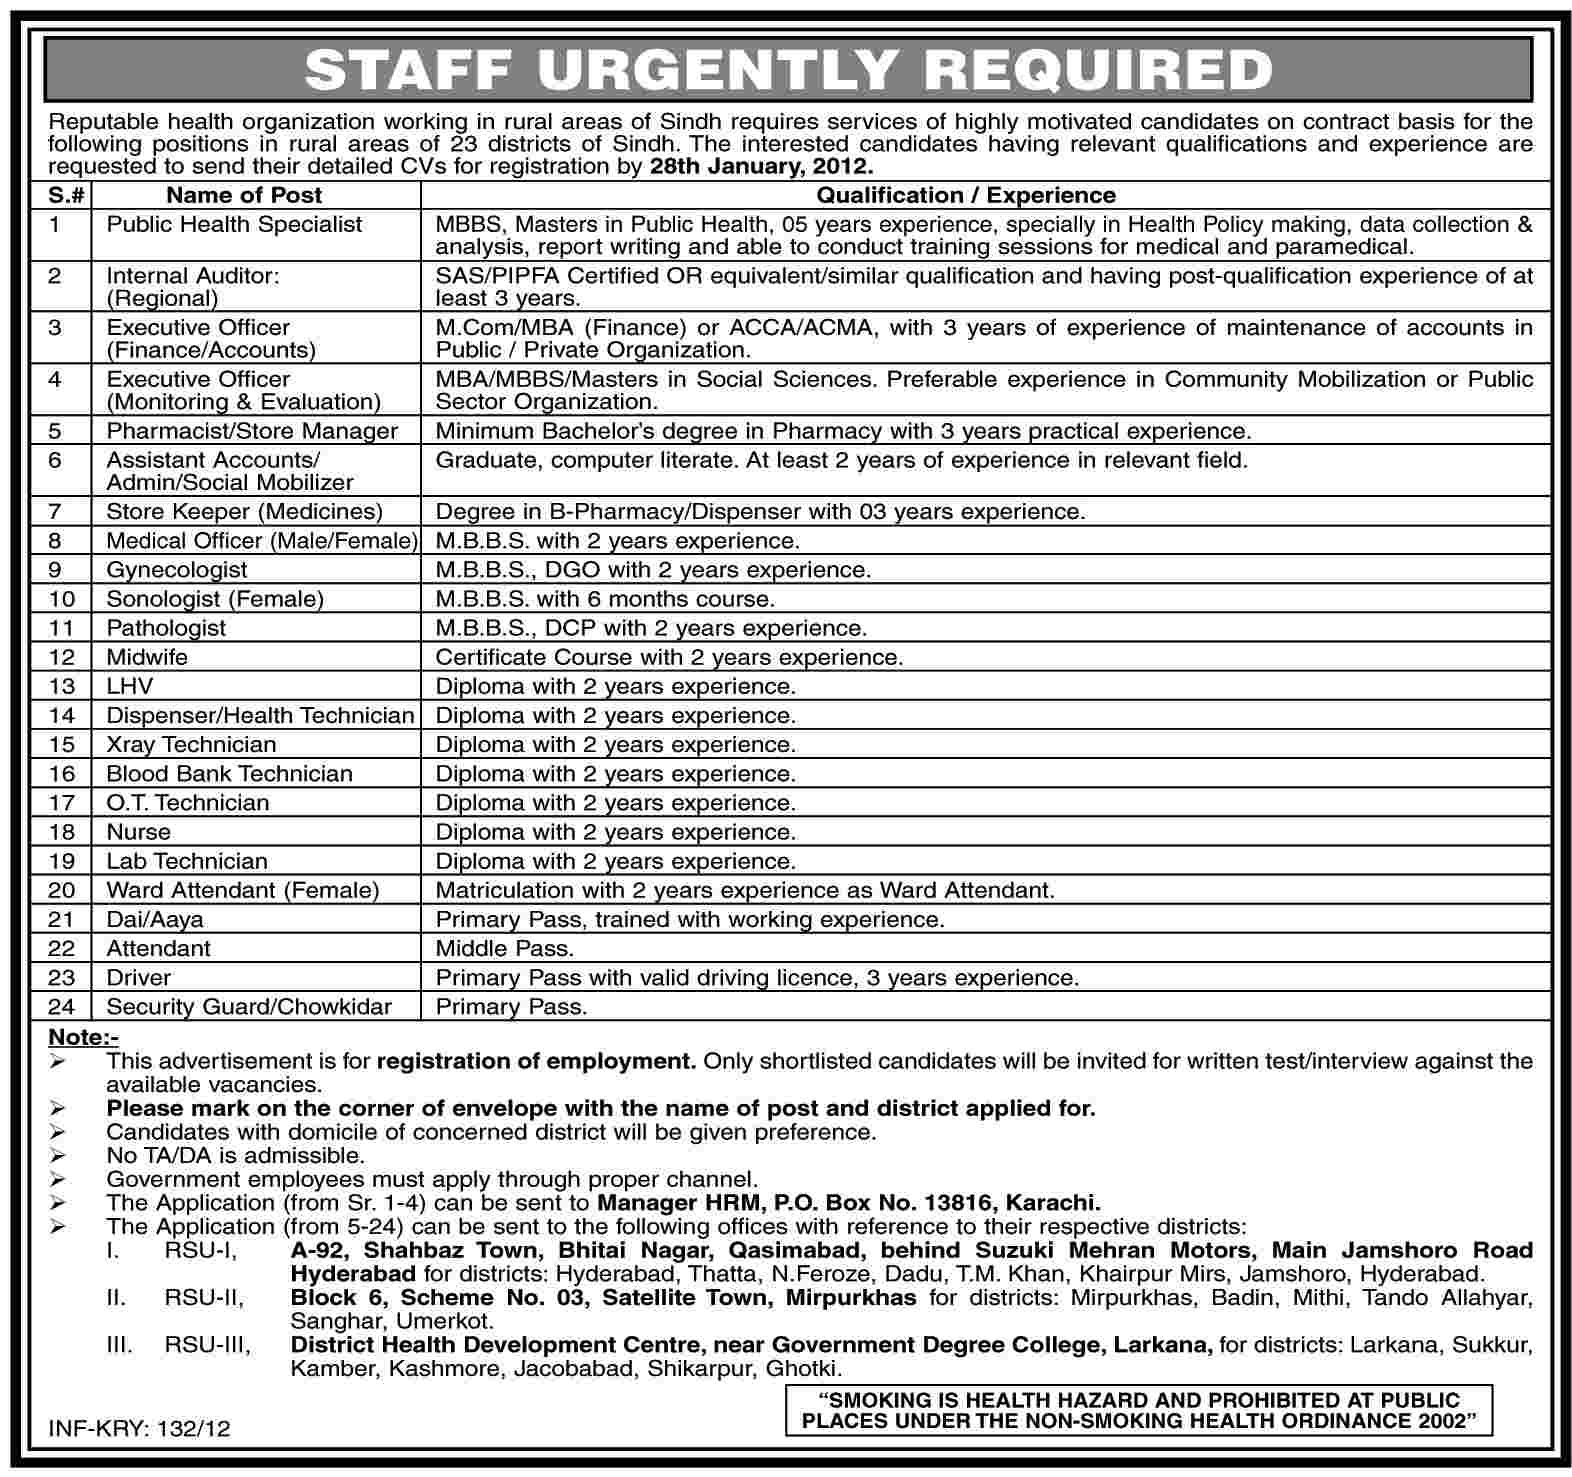 Health Organization in Sindh Required Staff